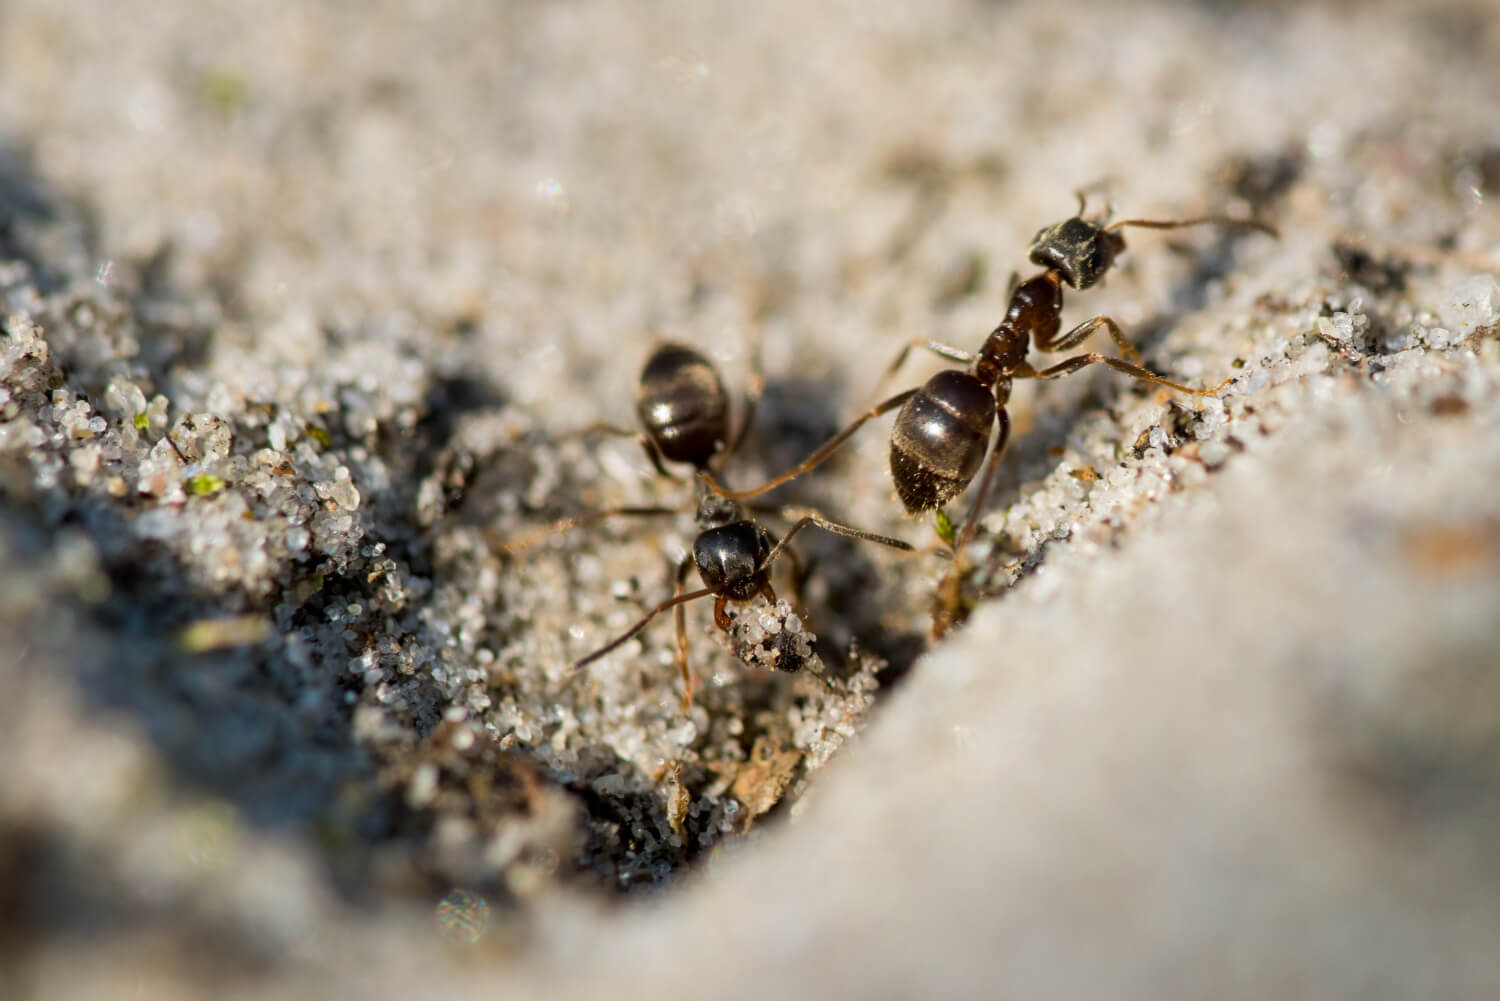 Ants feeding on a dried wood